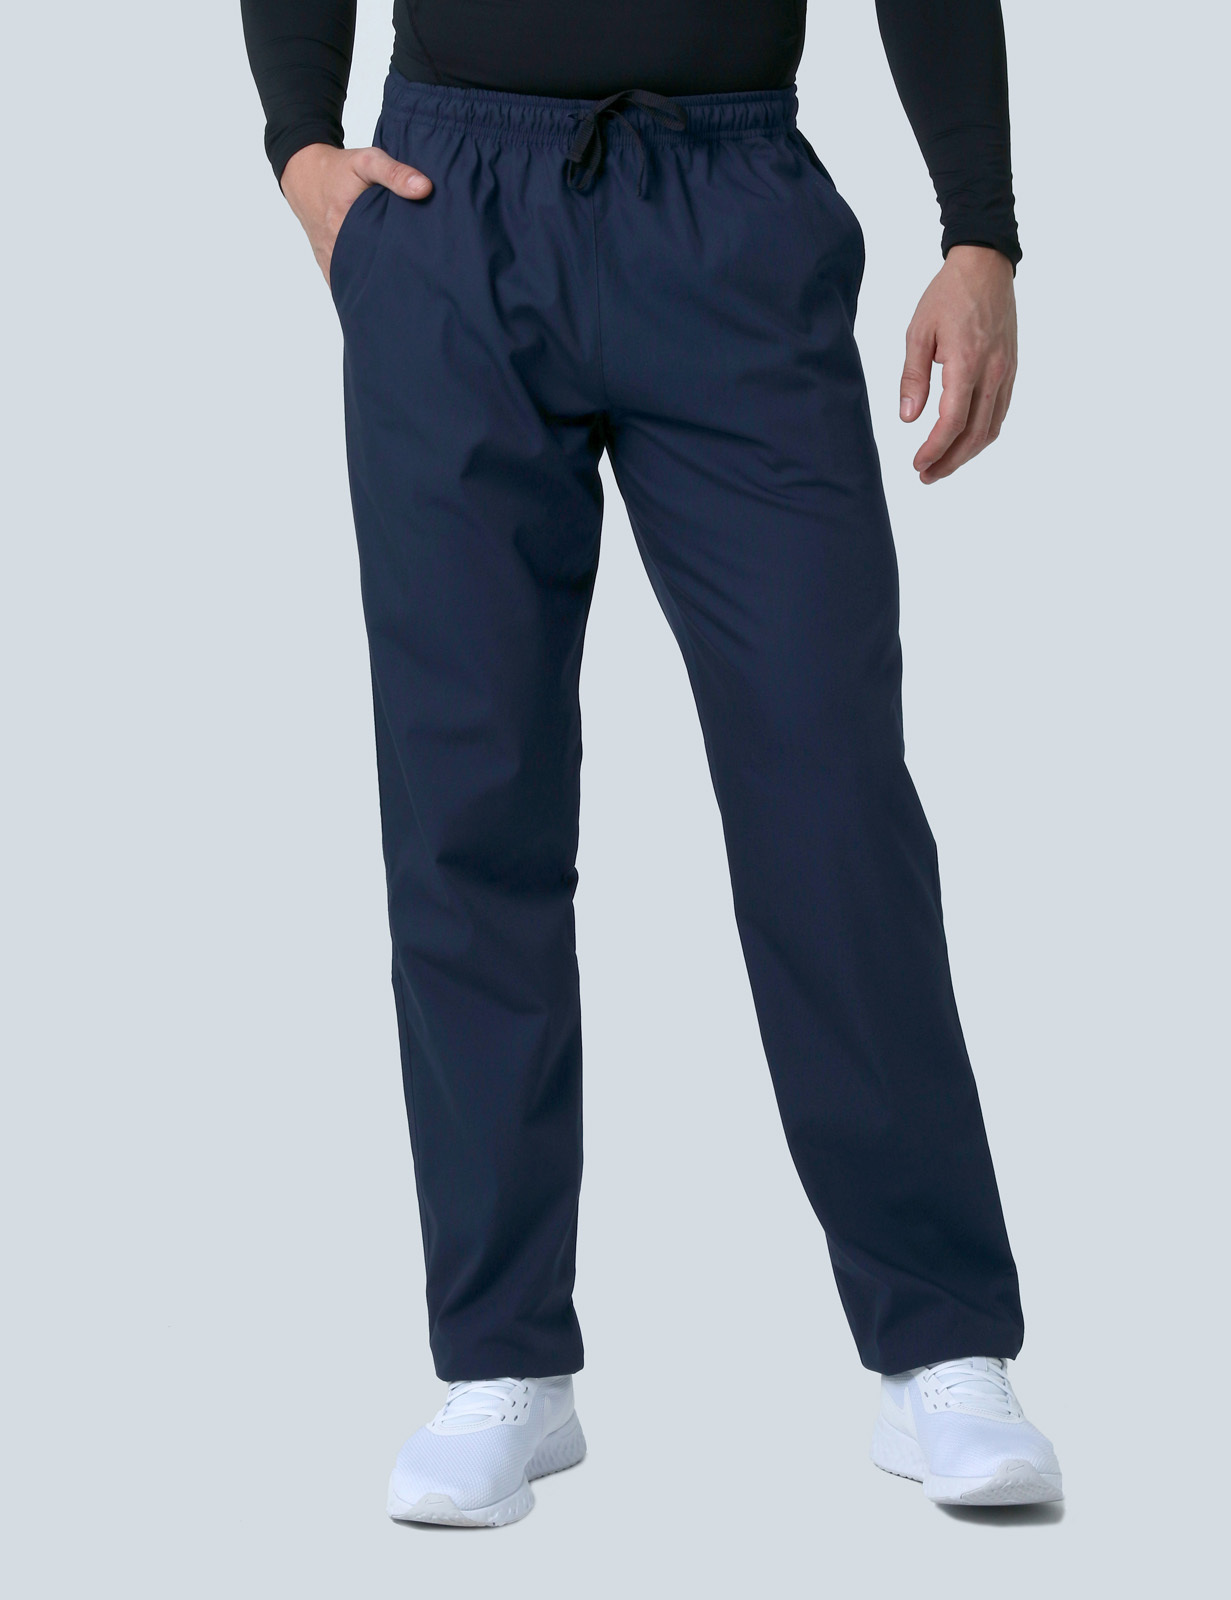 Men's Regular Cut Pants - Navy - Large - Tall